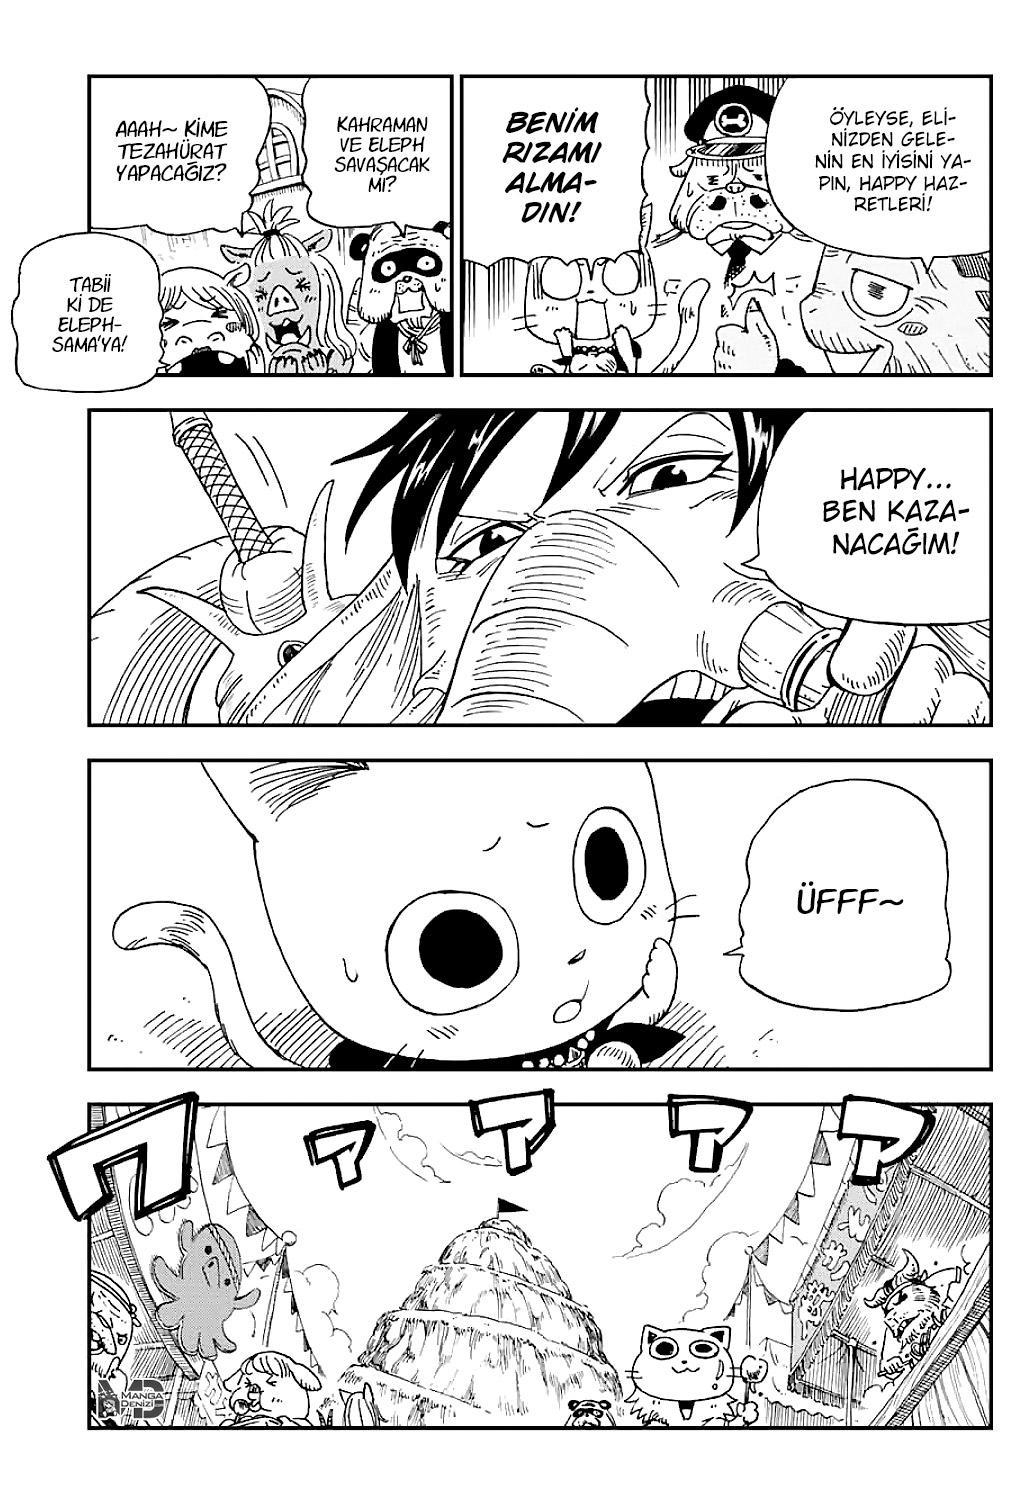 Fairy Tail: Happy's Great Adventure mangasının 09 bölümünün 4. sayfasını okuyorsunuz.